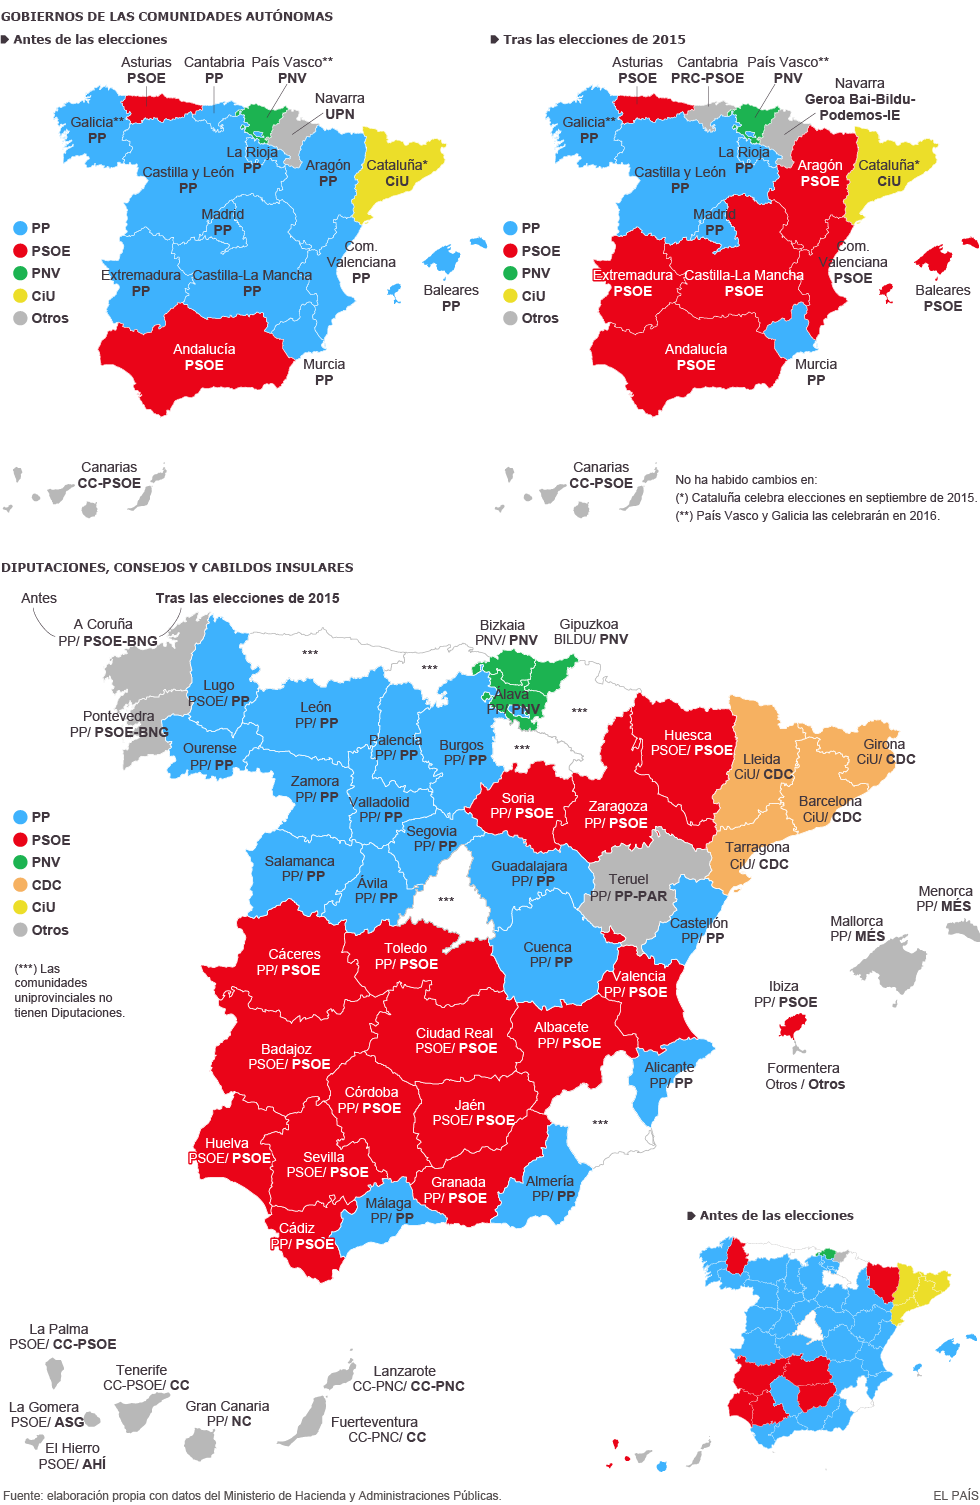 El mapa del poder municipal y autonómico